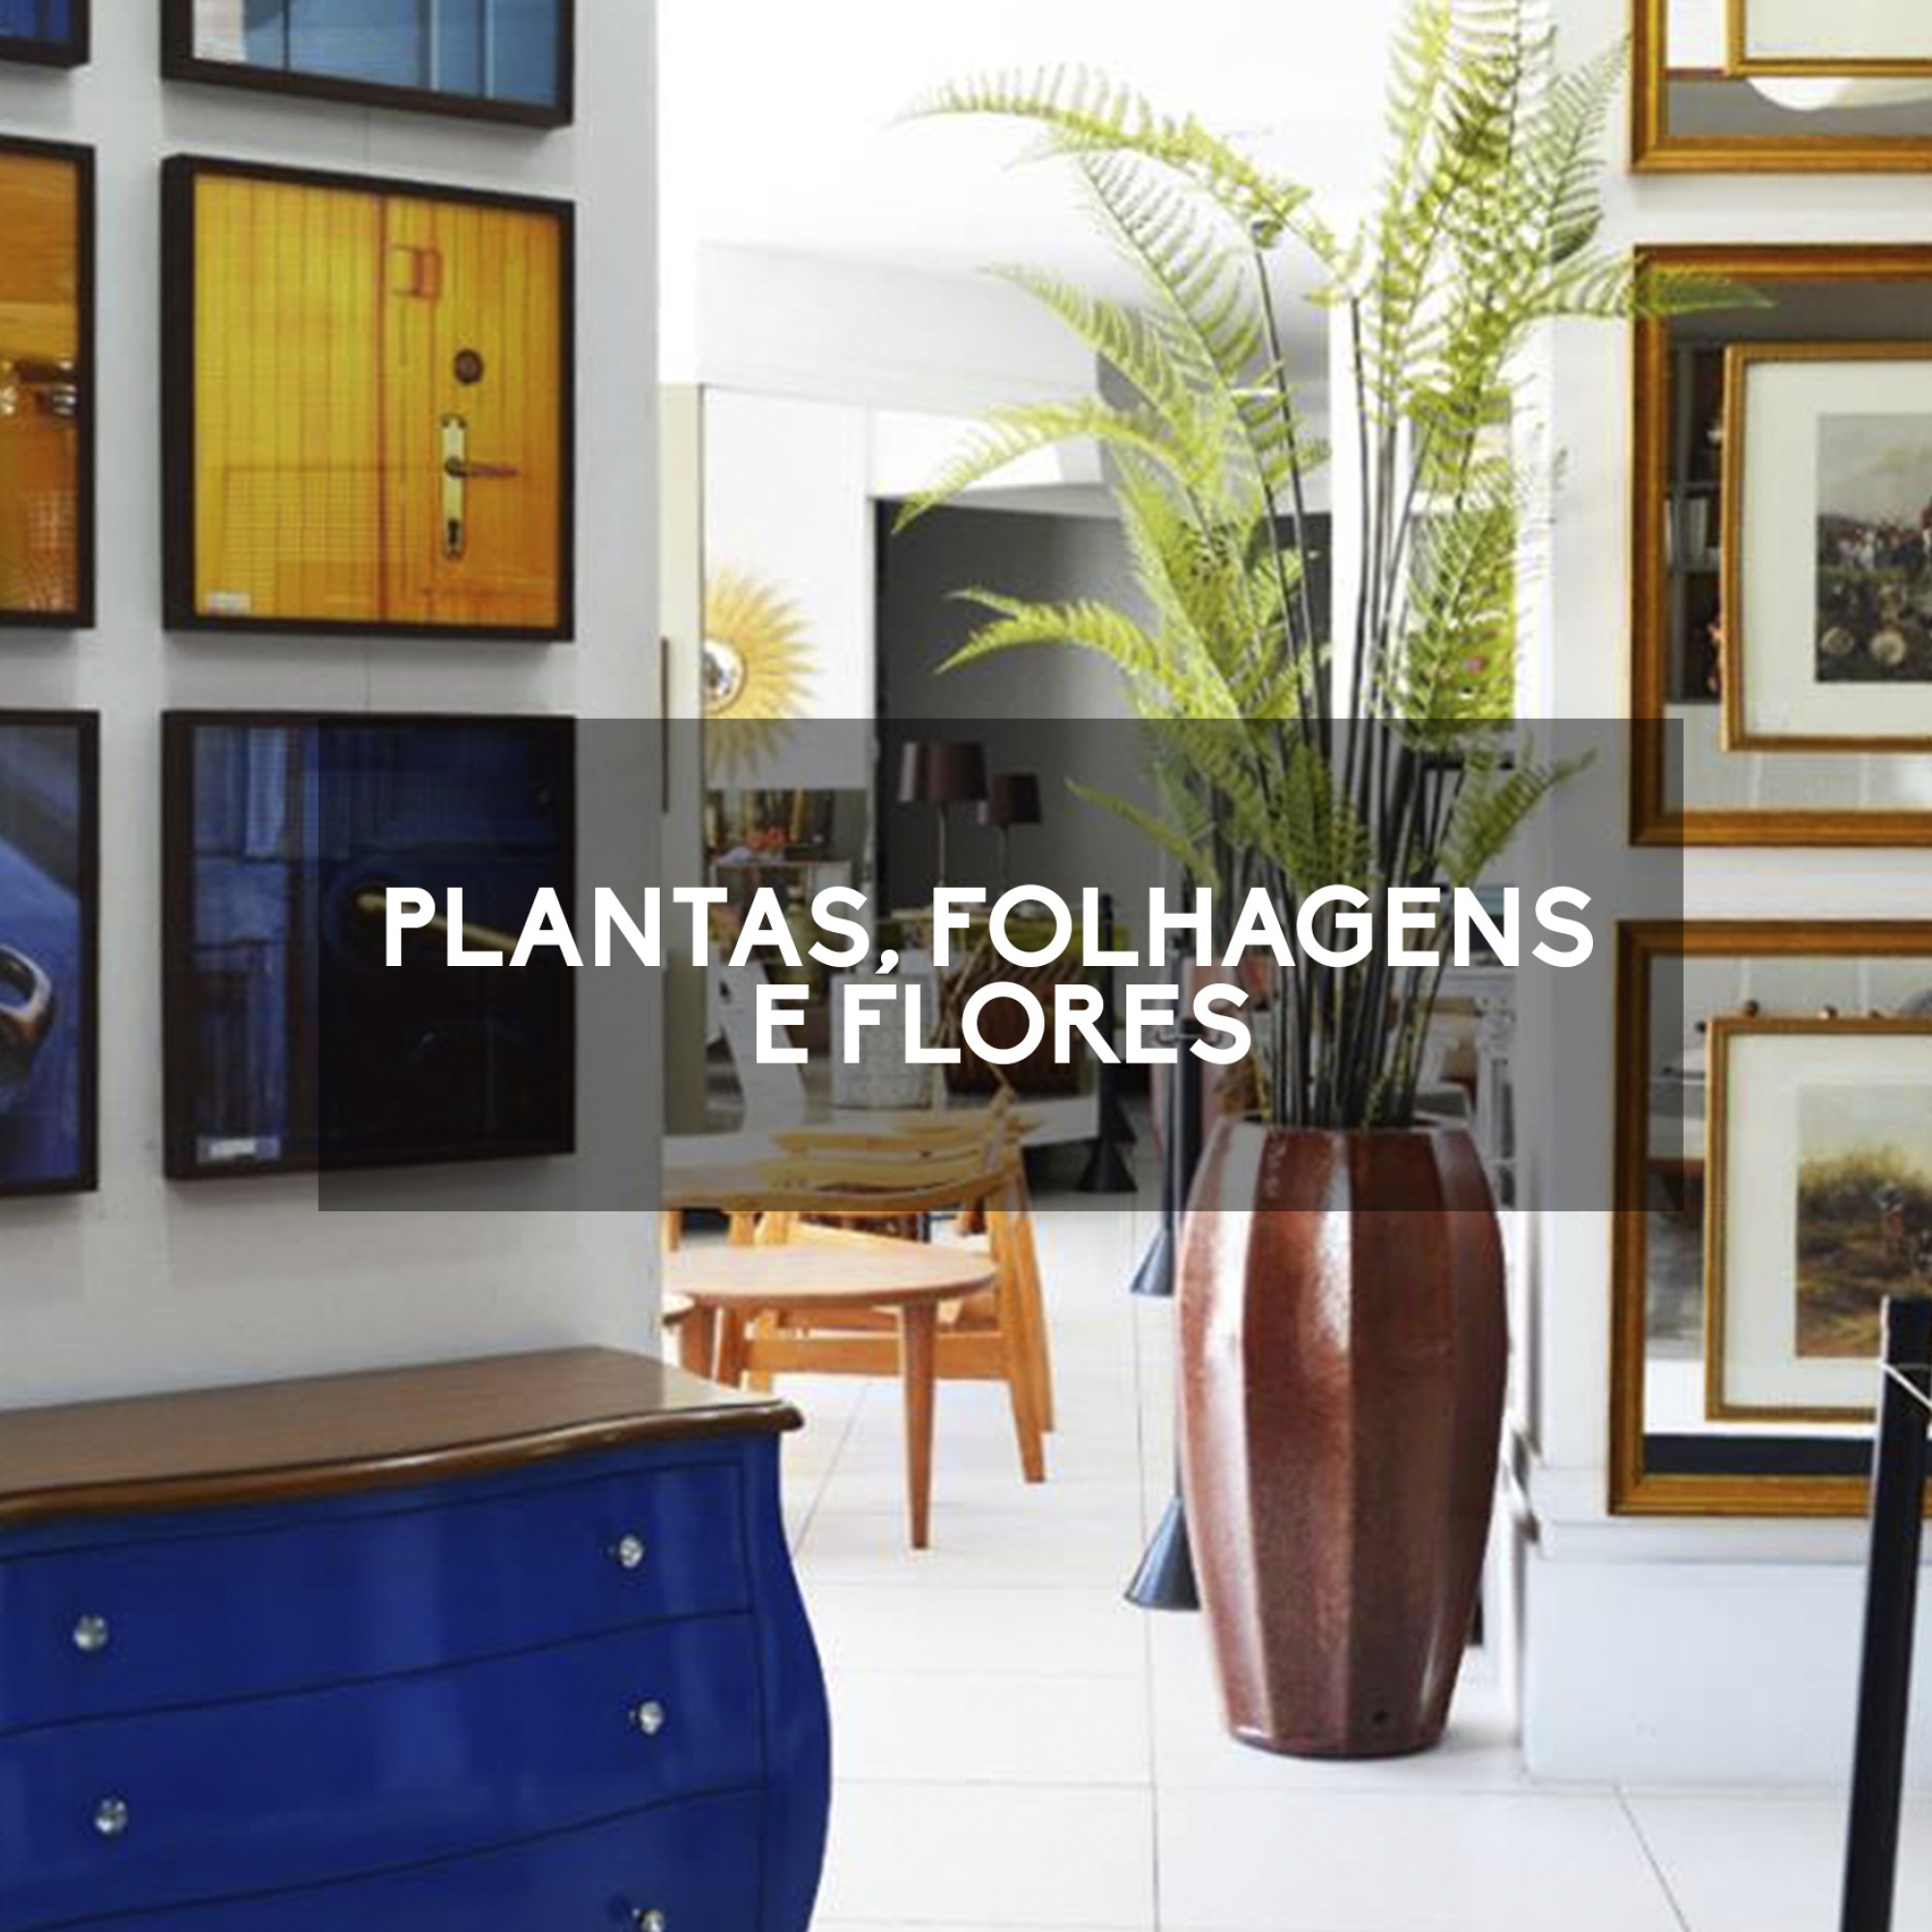 Plantas / Folhagens / Flores